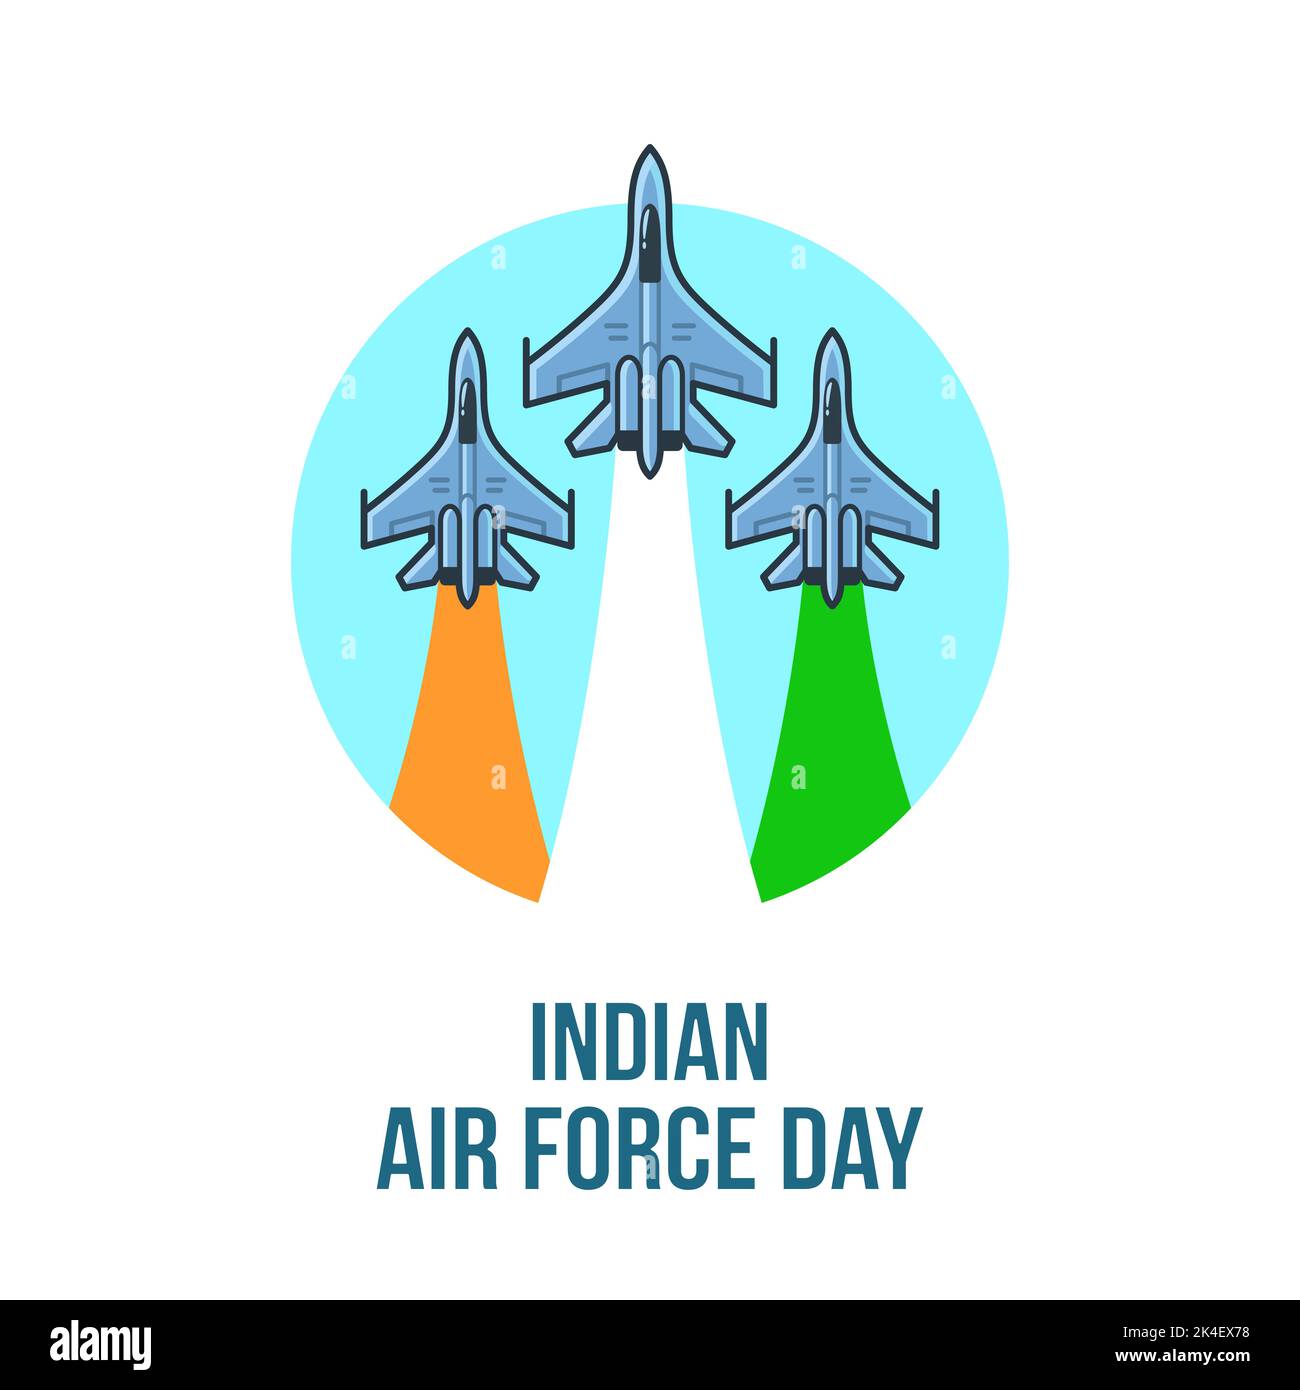 „Indian Air Force Day“-Design. Drei Kampfjets mit Trails in indischen Flaggen-Farben. Flachliniensymbol, Vektorgrafik. Stock Vektor